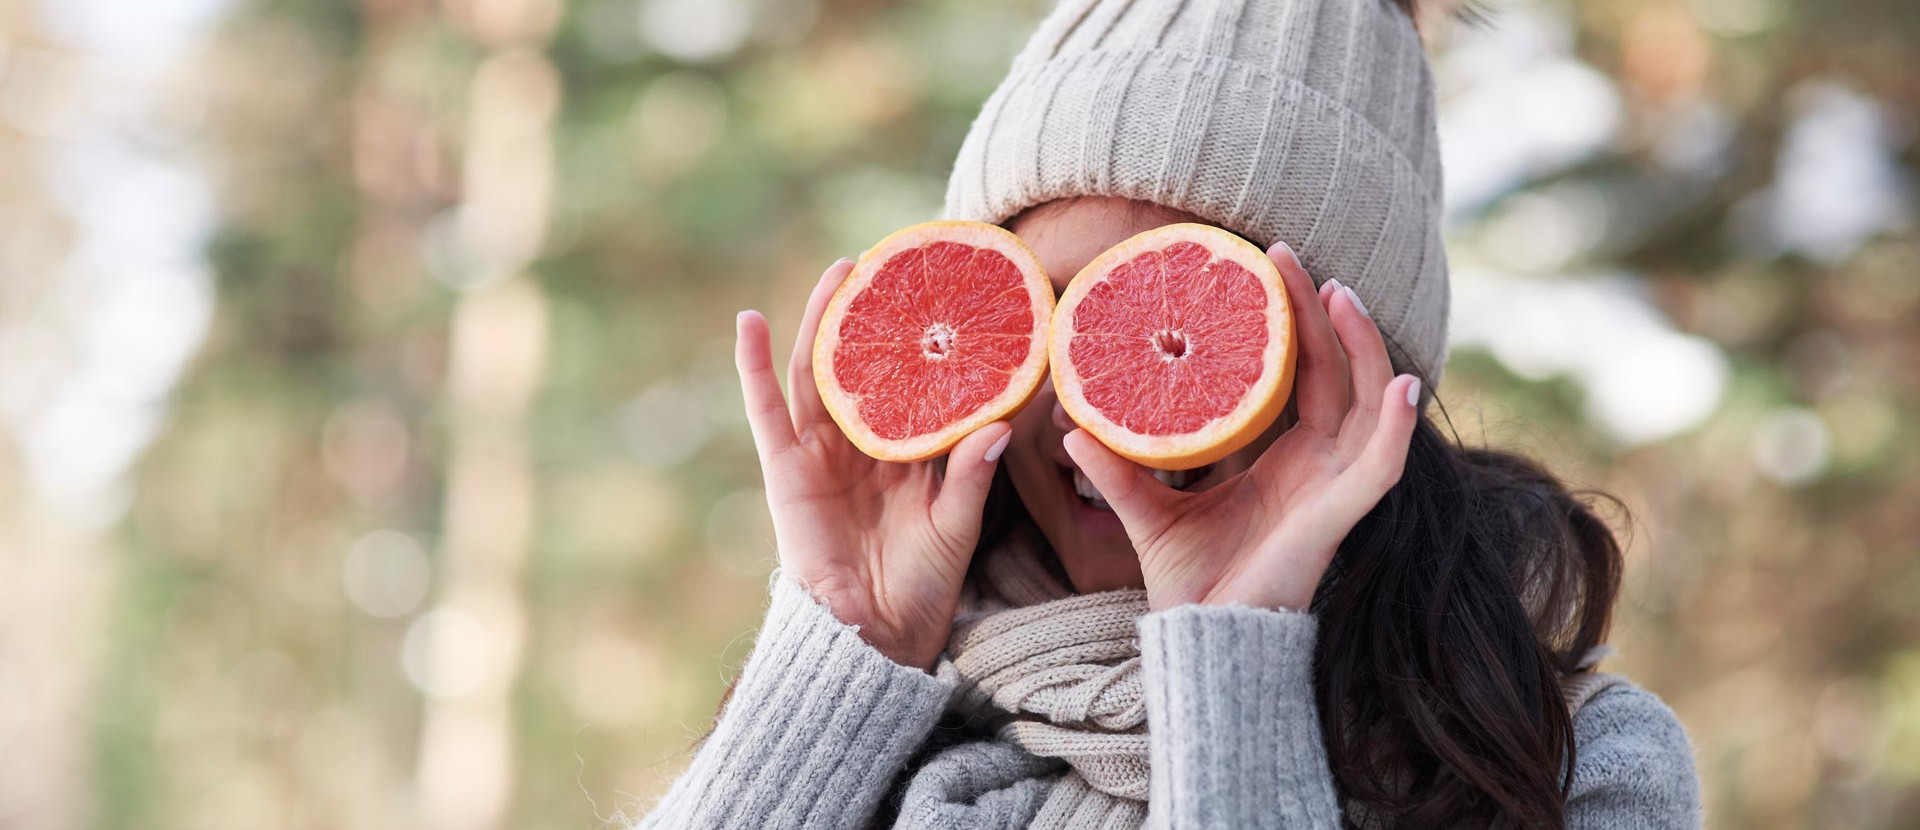 Frau hält sich Grapefruit-Hälften vor die Augen